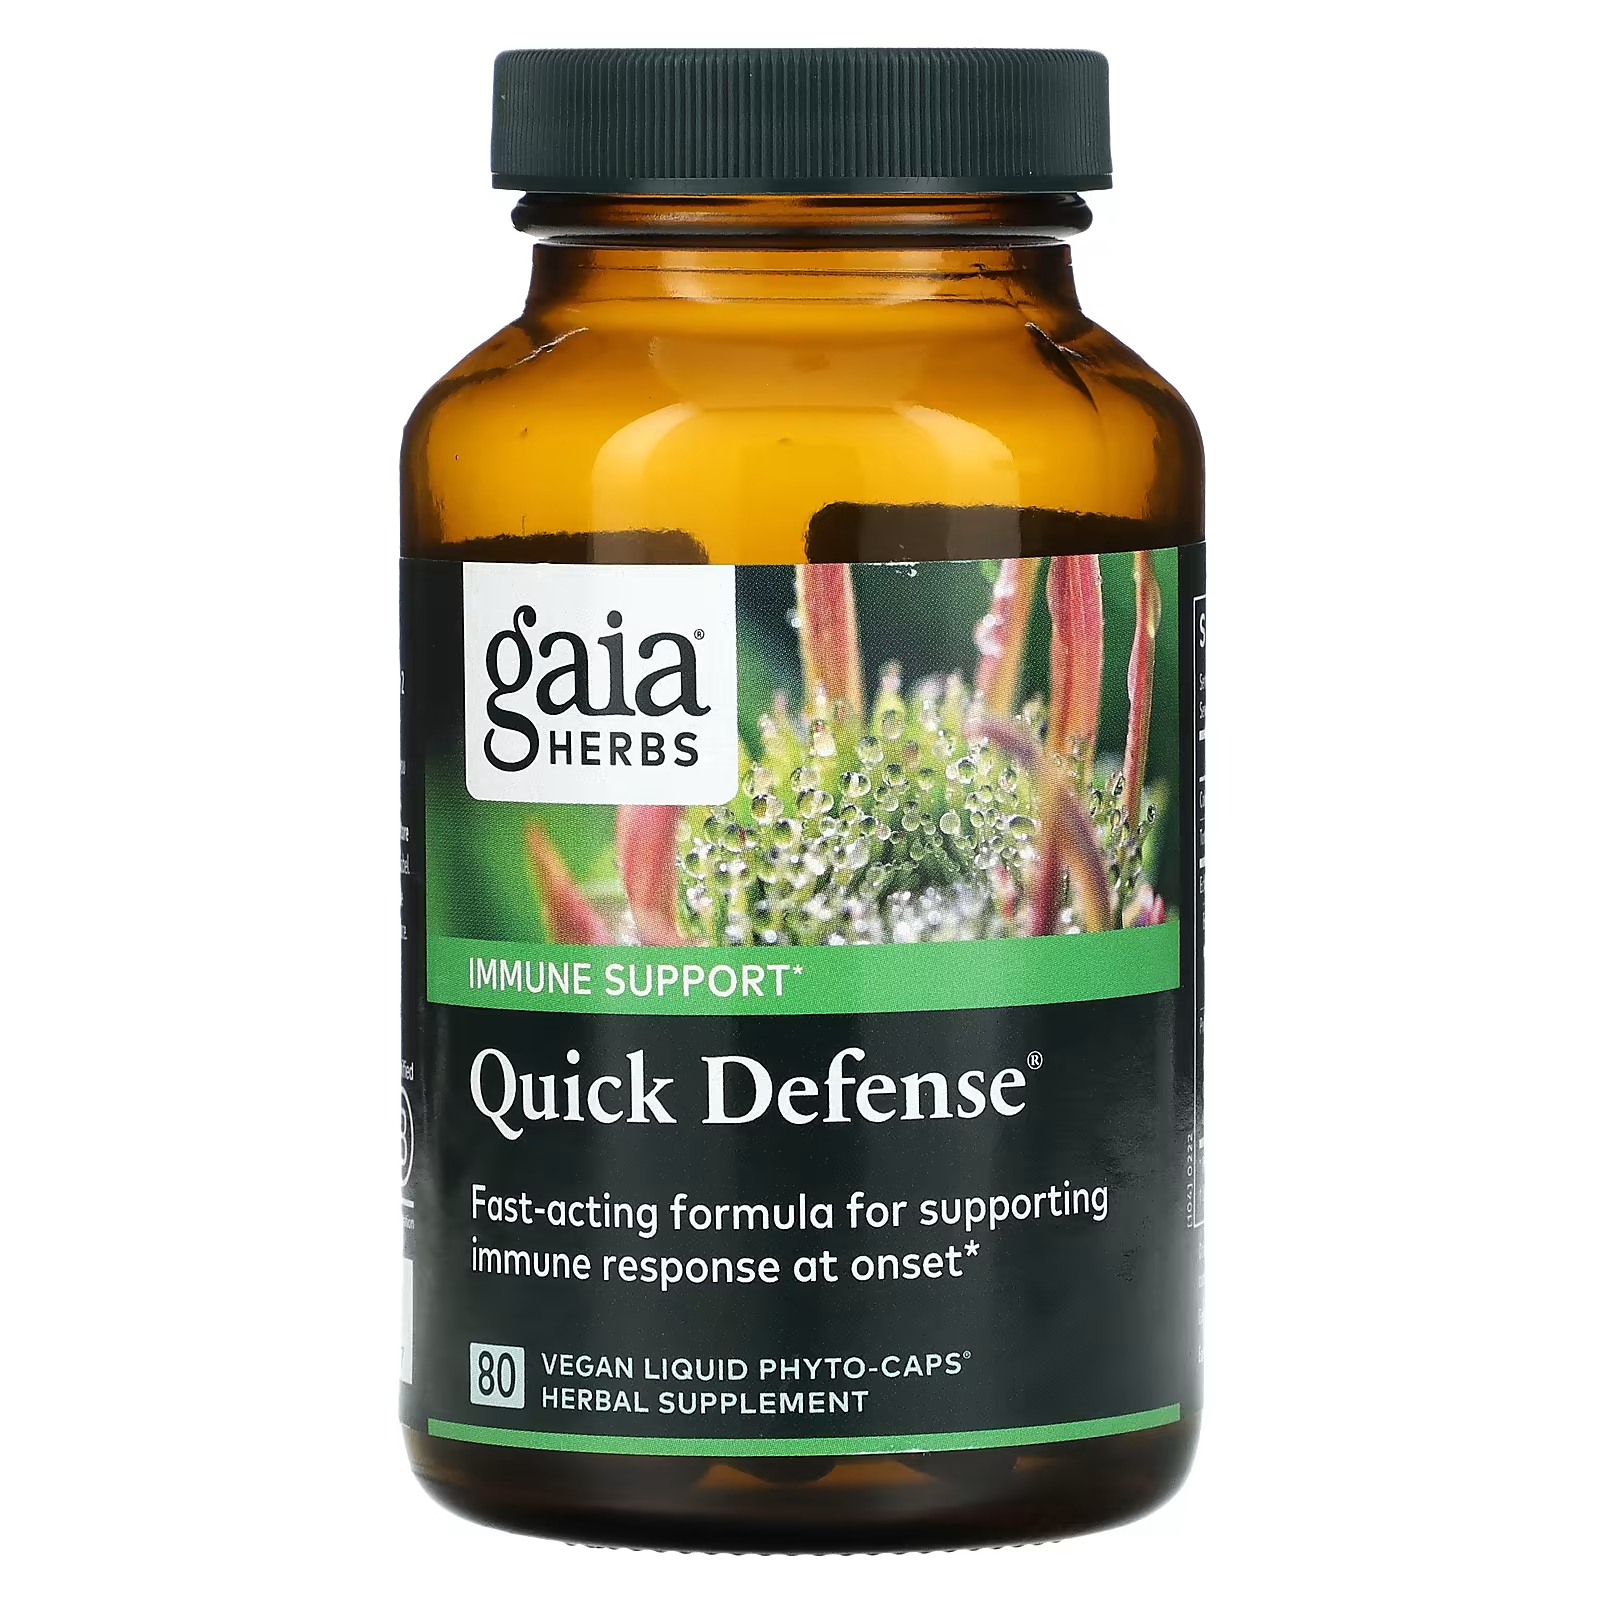 Пищевая добавка Gaia Herbs Quick Defense, 80 веганских жидких фито-капсул пищевая добавка gaia herbs energy vitality 60 веганских капсул